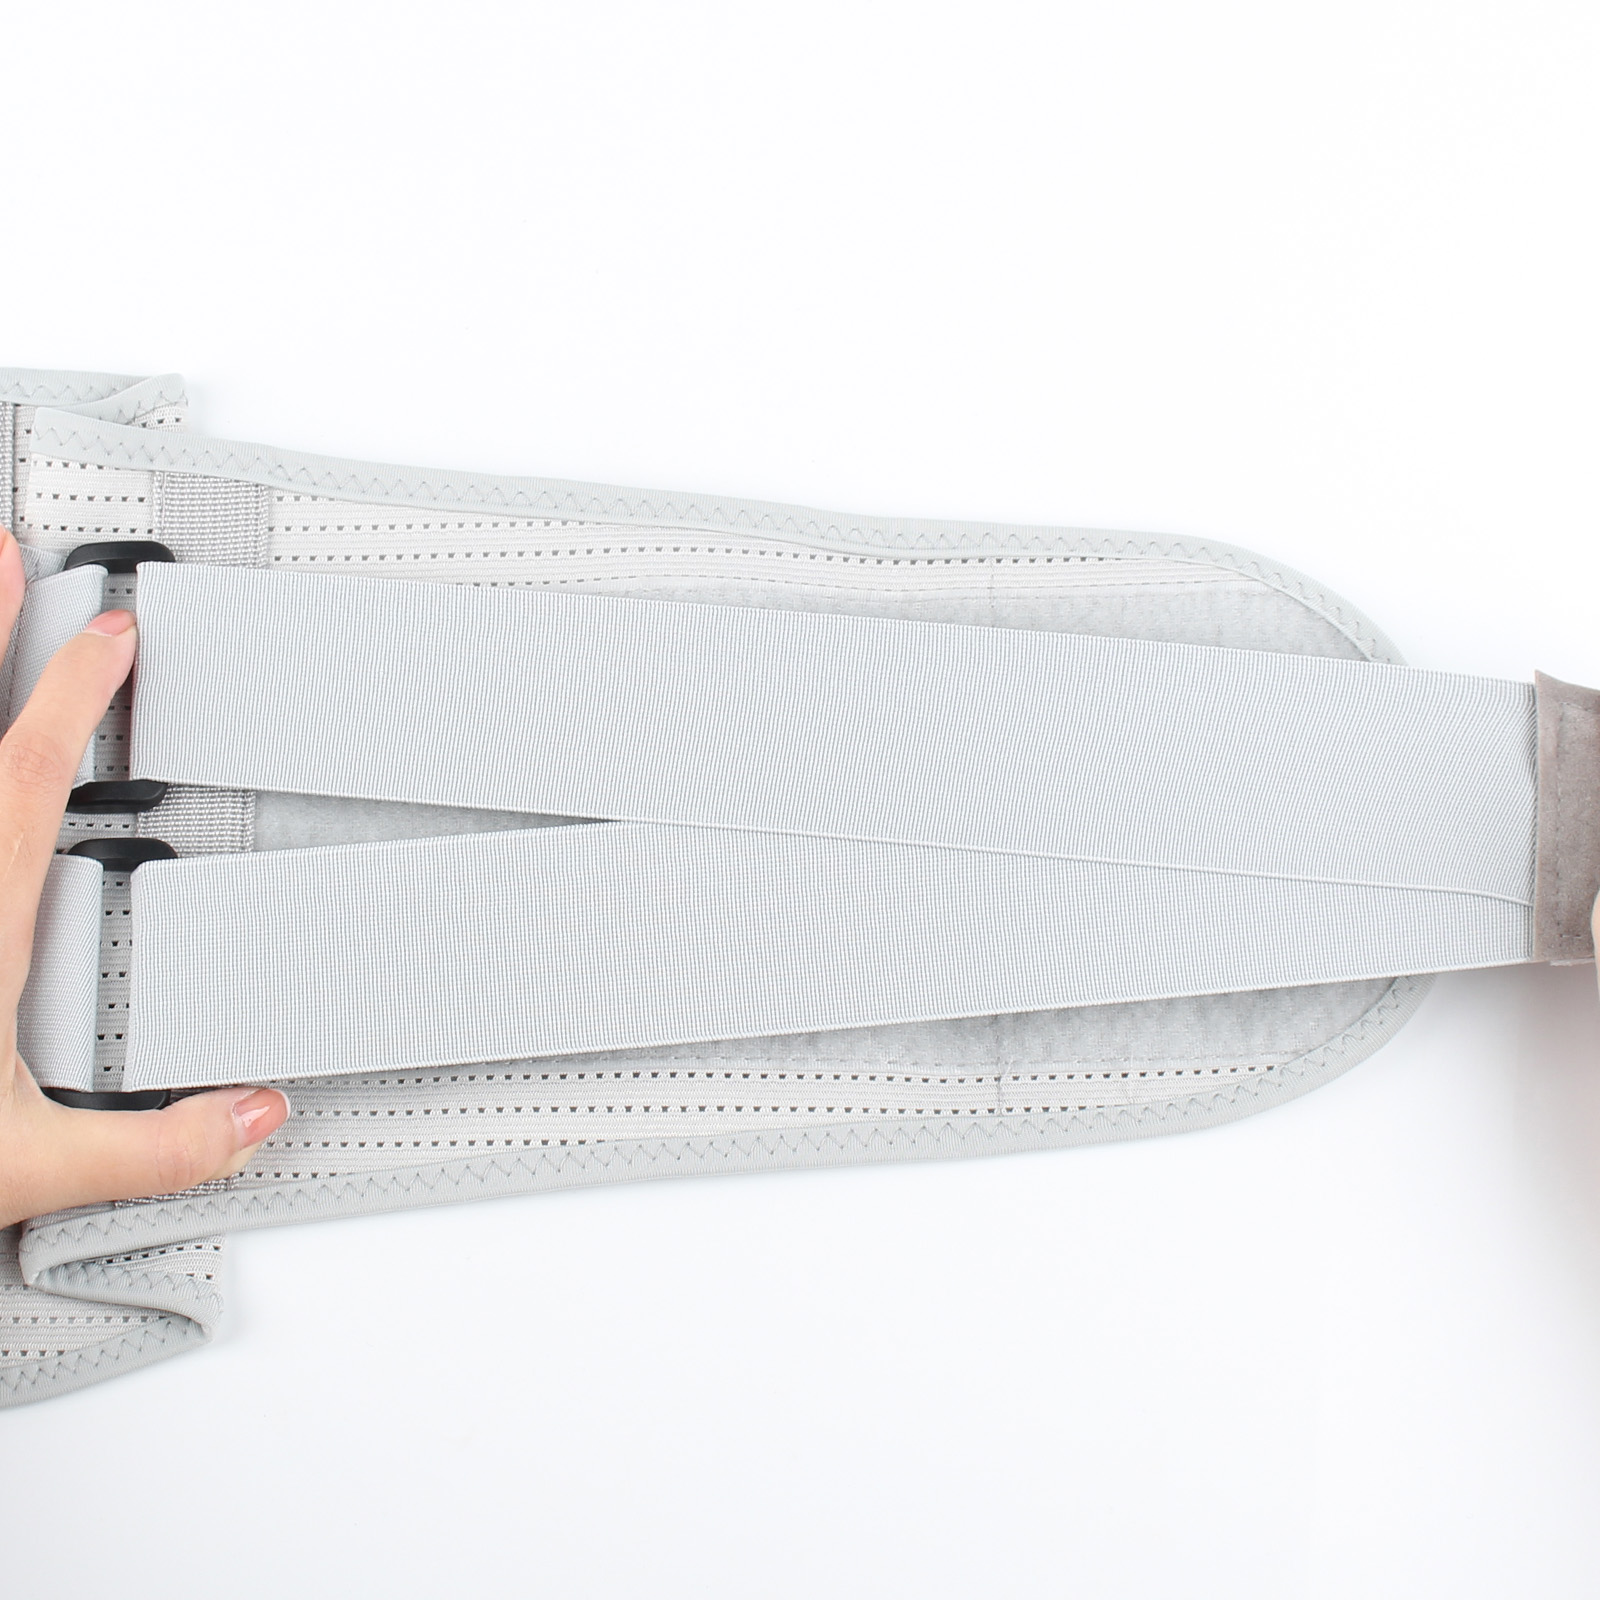 Breathable Mesh Design Compression Belt For Men Women, High-quality &  Affordable